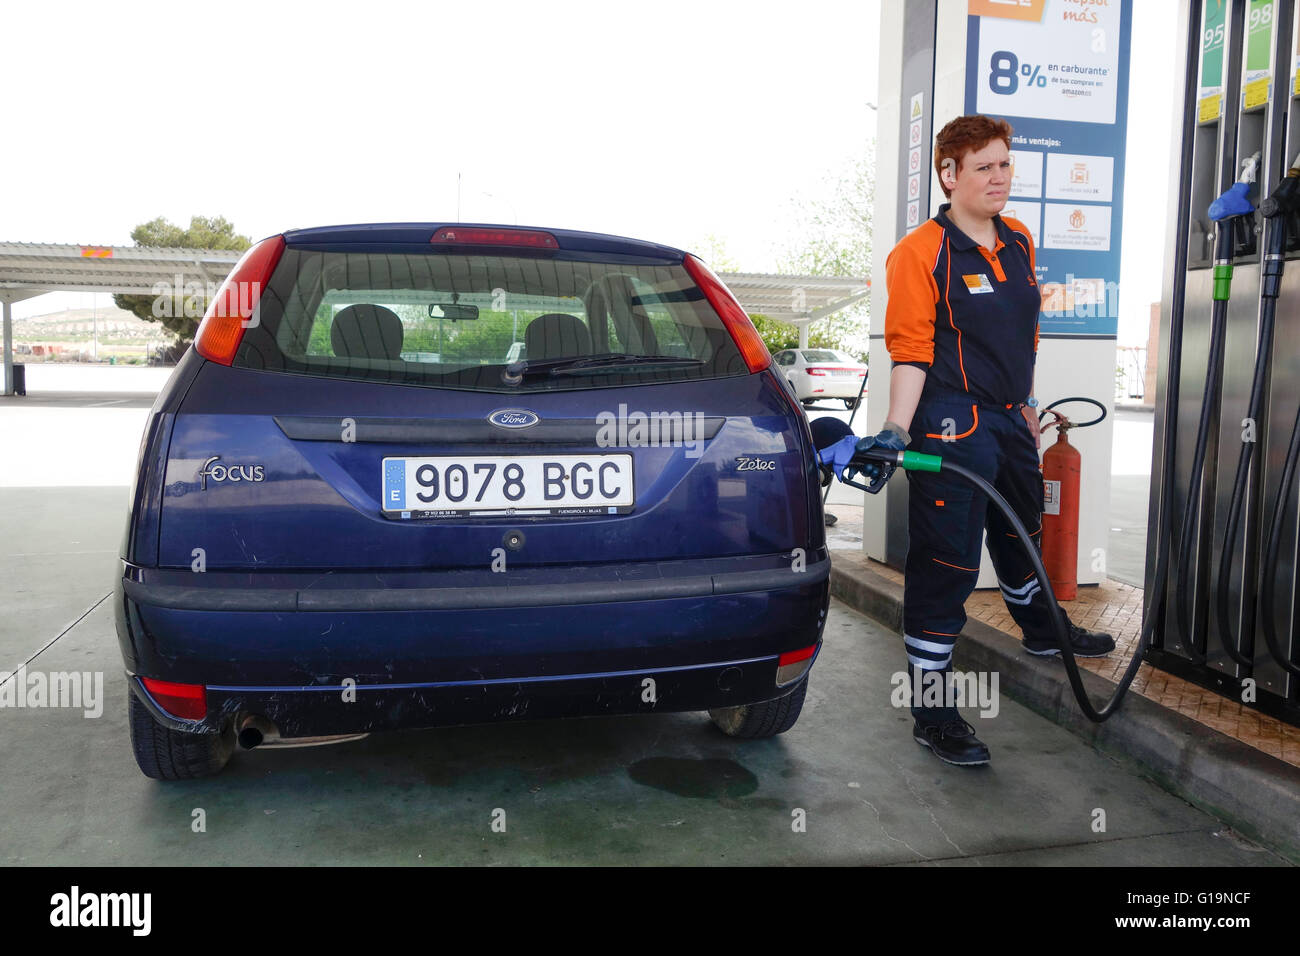 Femme pompiste, remplissage Ford Focus voiture à la station d'essence Repsol.Espagne. Banque D'Images